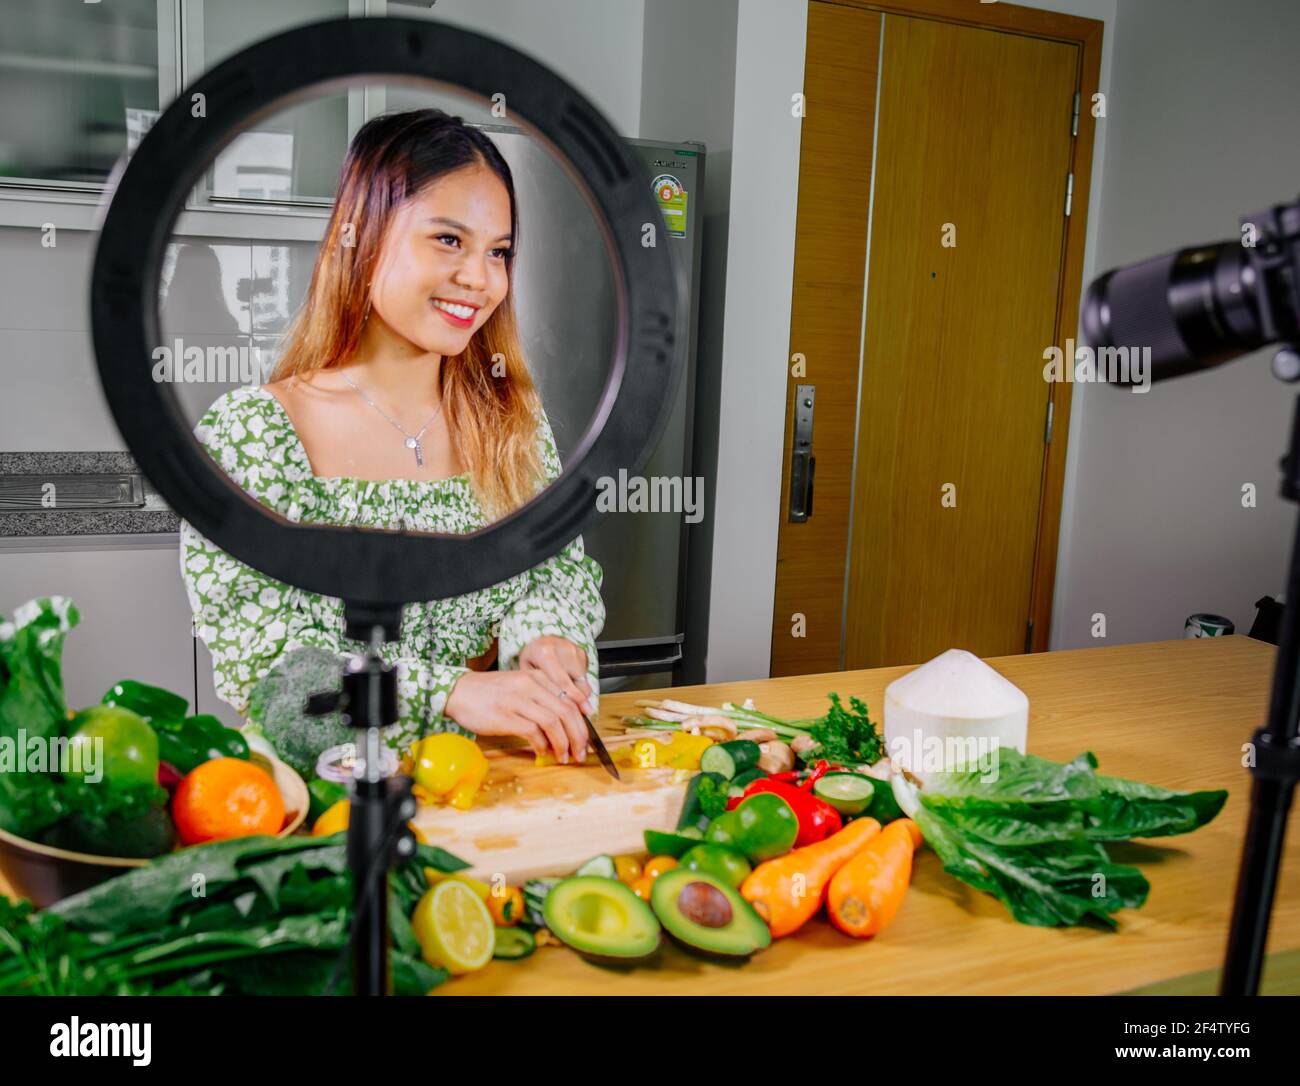 Asiatische Frau Blogger oder Content Creator Kochen und Aufnahme Videokamera. Zeigt gesunde Lebensmittel während der Aufnahme mit Kamera in der Küche. Stockfoto